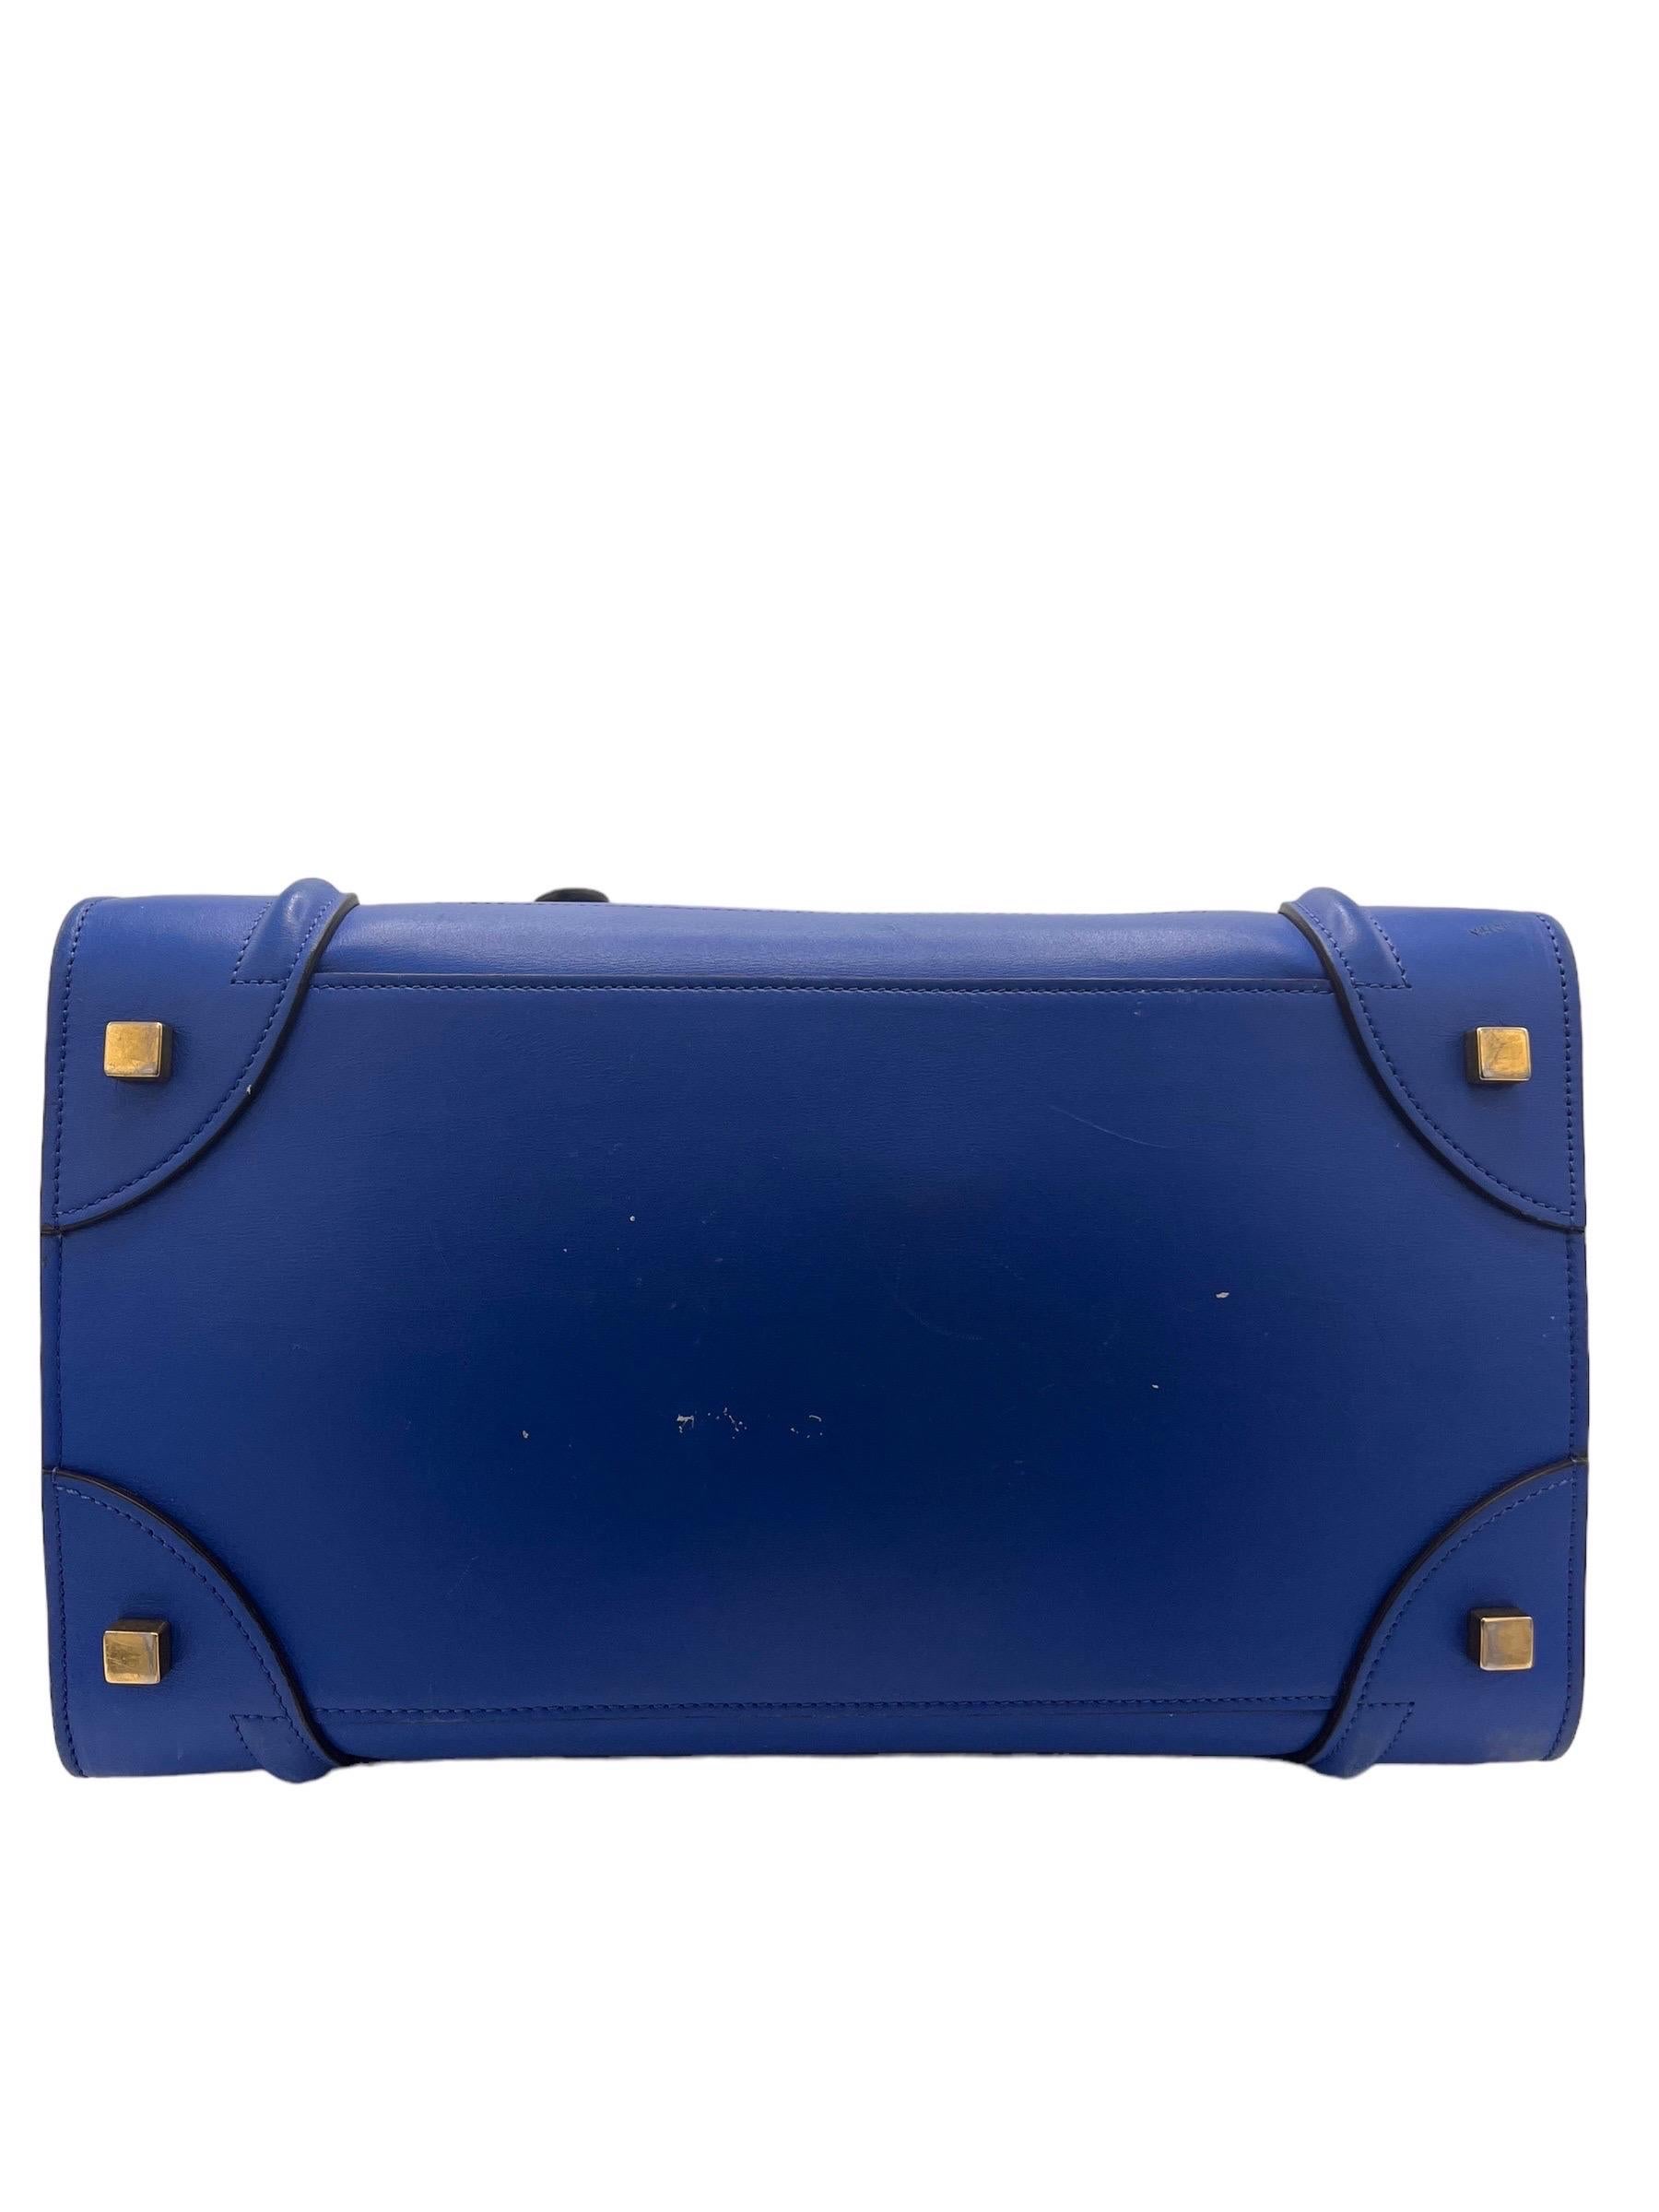 Borsa a Mano Cèline Luggage Medium Blu Elettrico For Sale 6